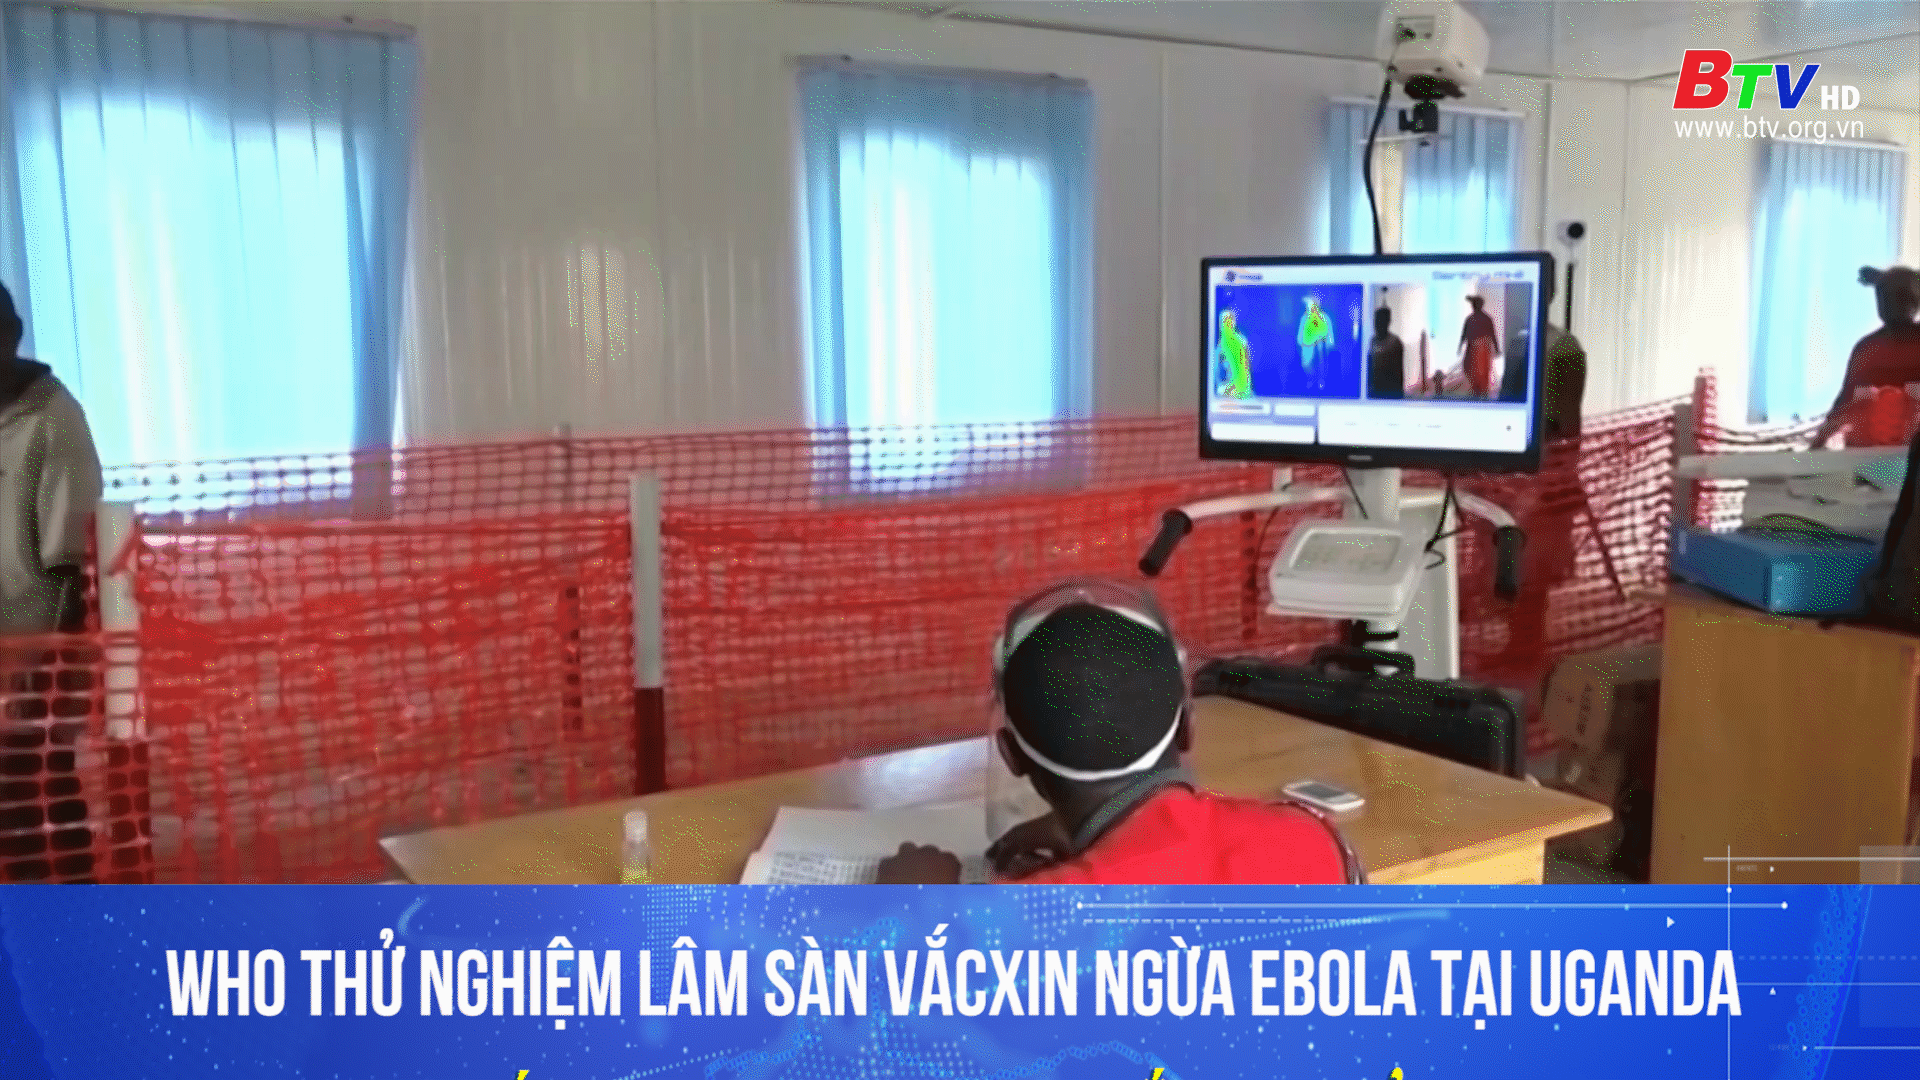 Who thử nghiệm lâm sàng vắc xin phòng ebola tại Uganda